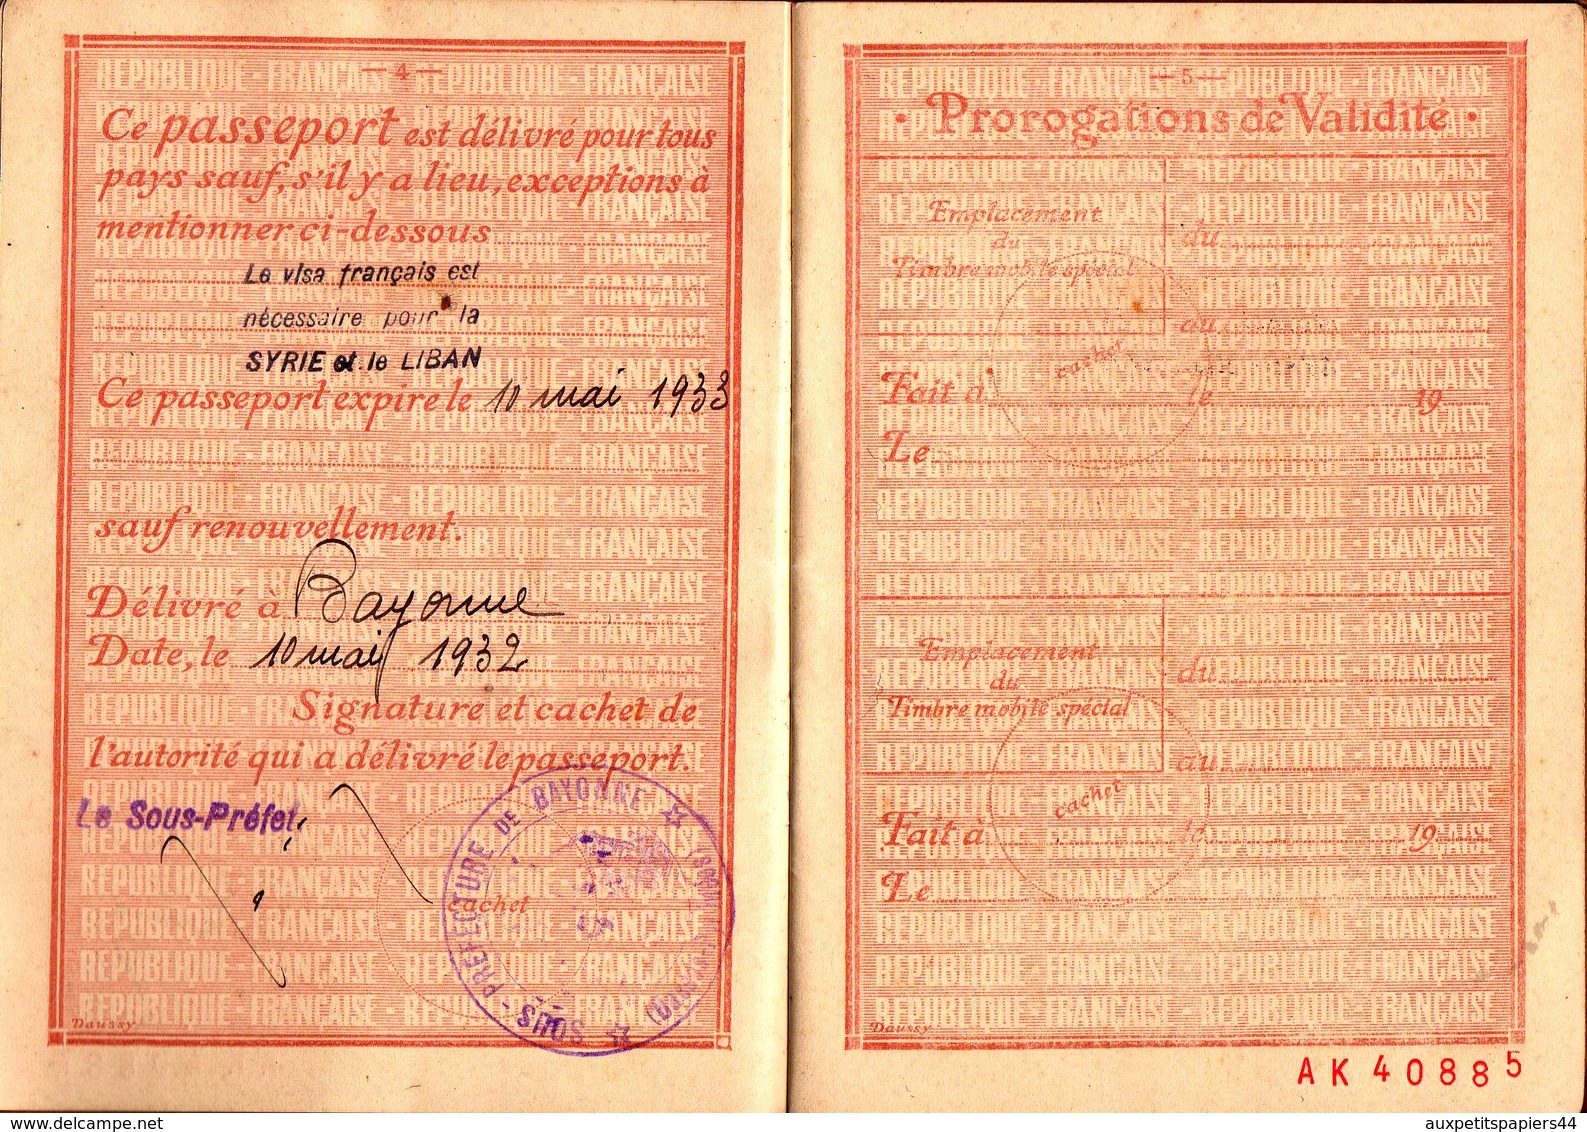 Passeport N°3403 à l'étranger 20 francs établi à Bayonne en 1932 pour Monsieur Debus Henri né à Meulan en 1871